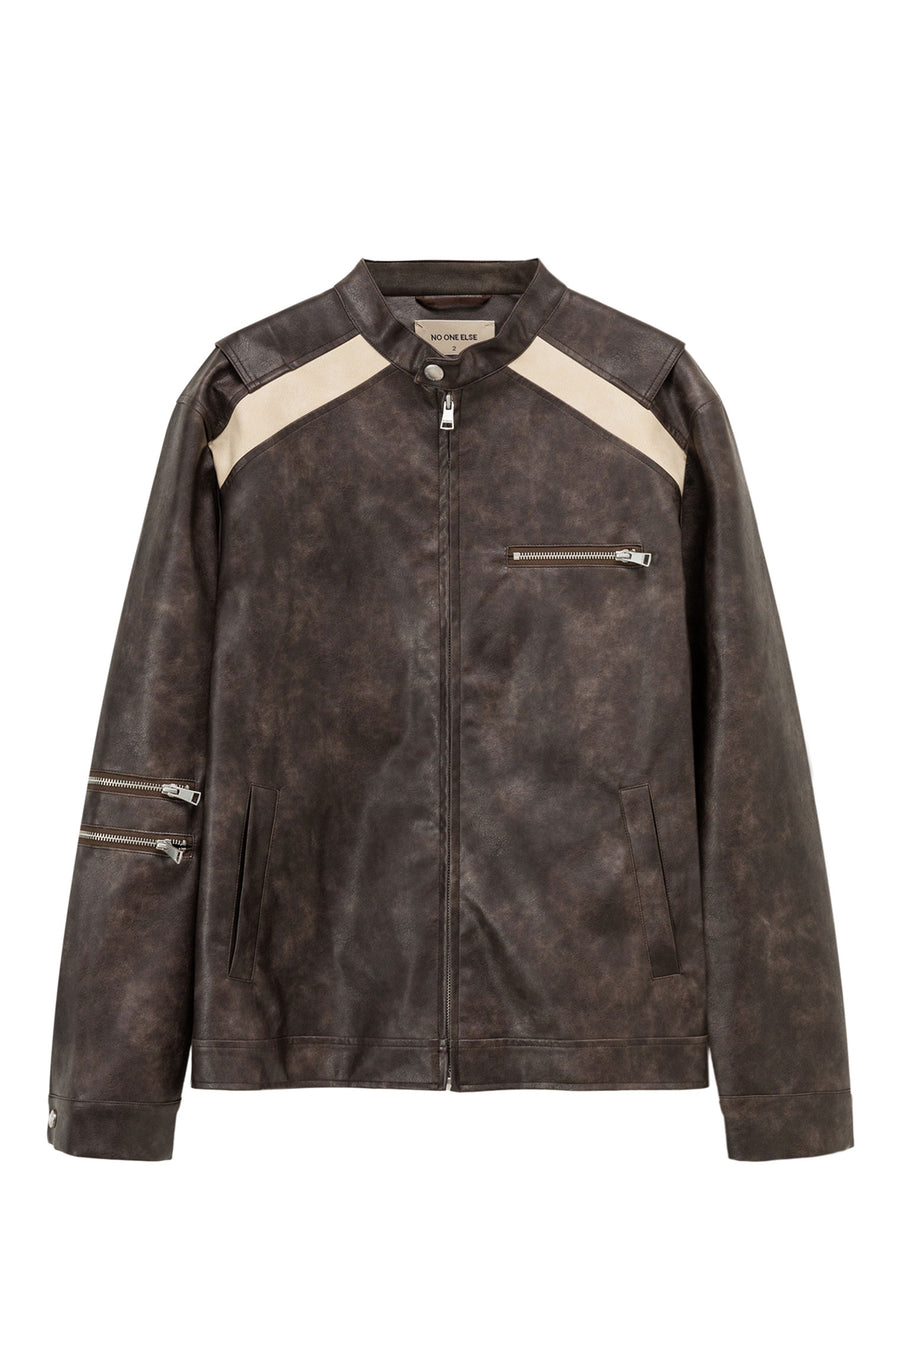 Boxy Leather Jacket